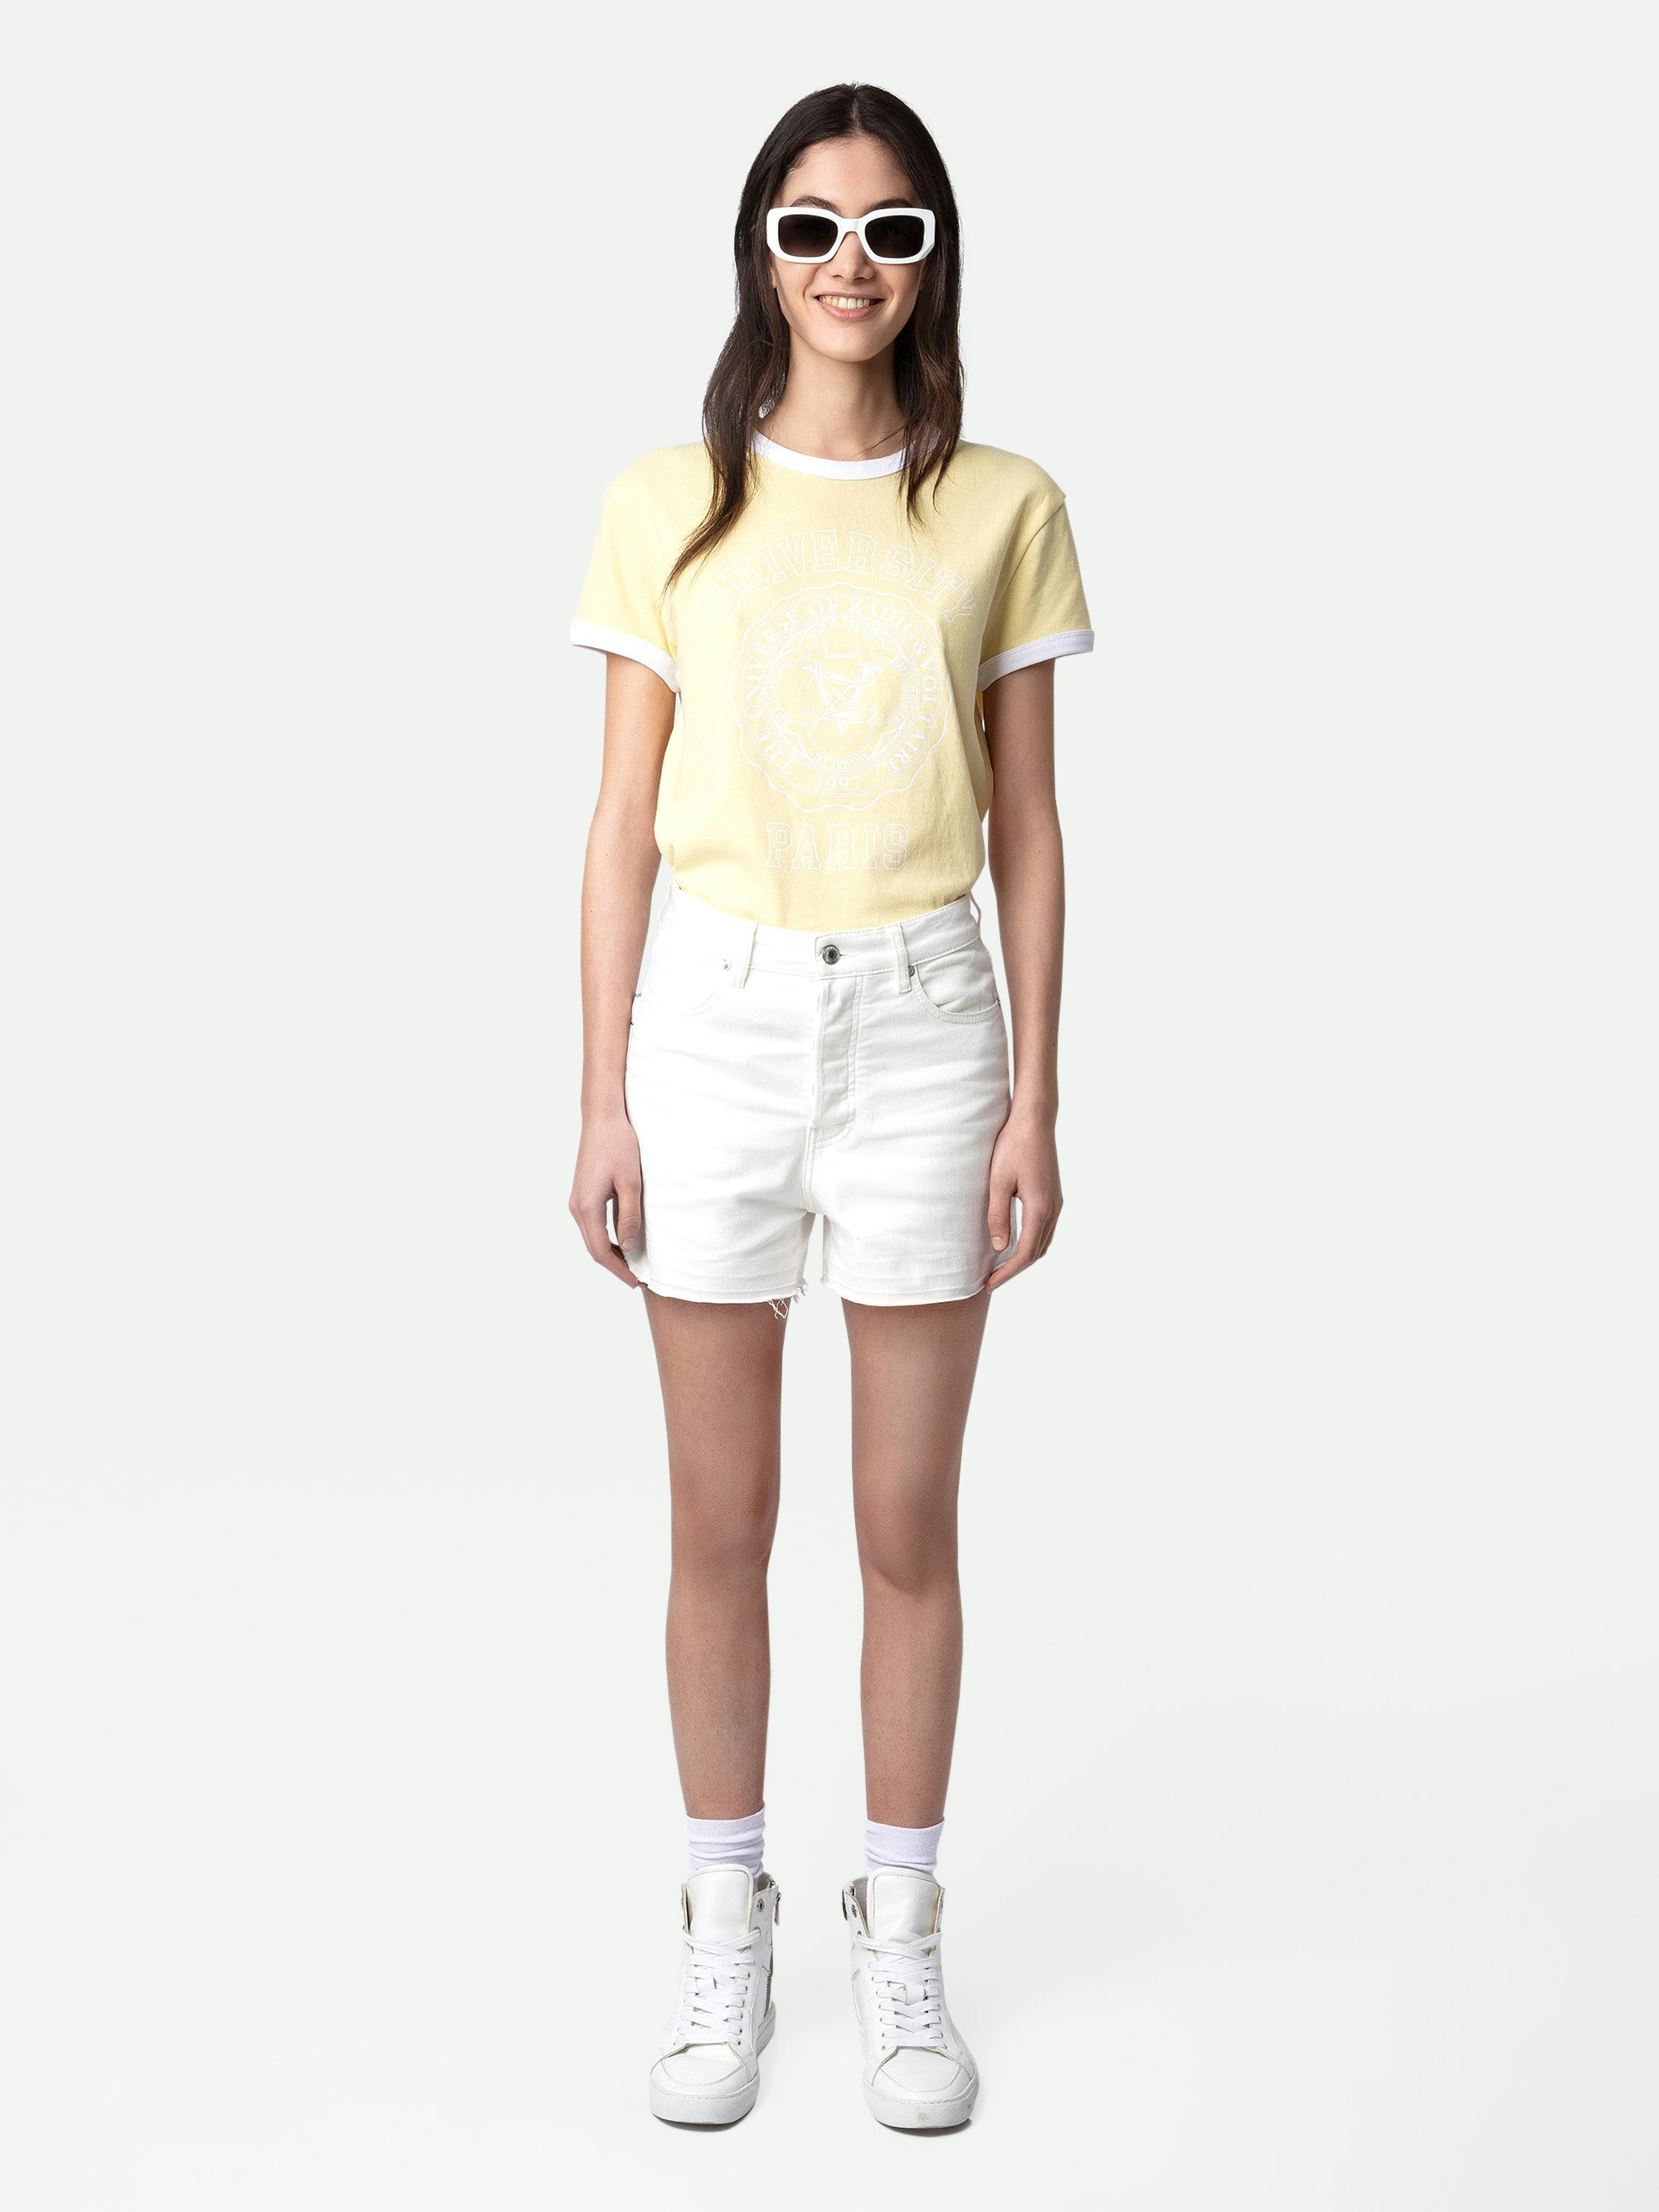 T-shirt Walk University - T-shirt in cotone giallo chiaro a maniche corte, motivo University e bordi a contrasto.